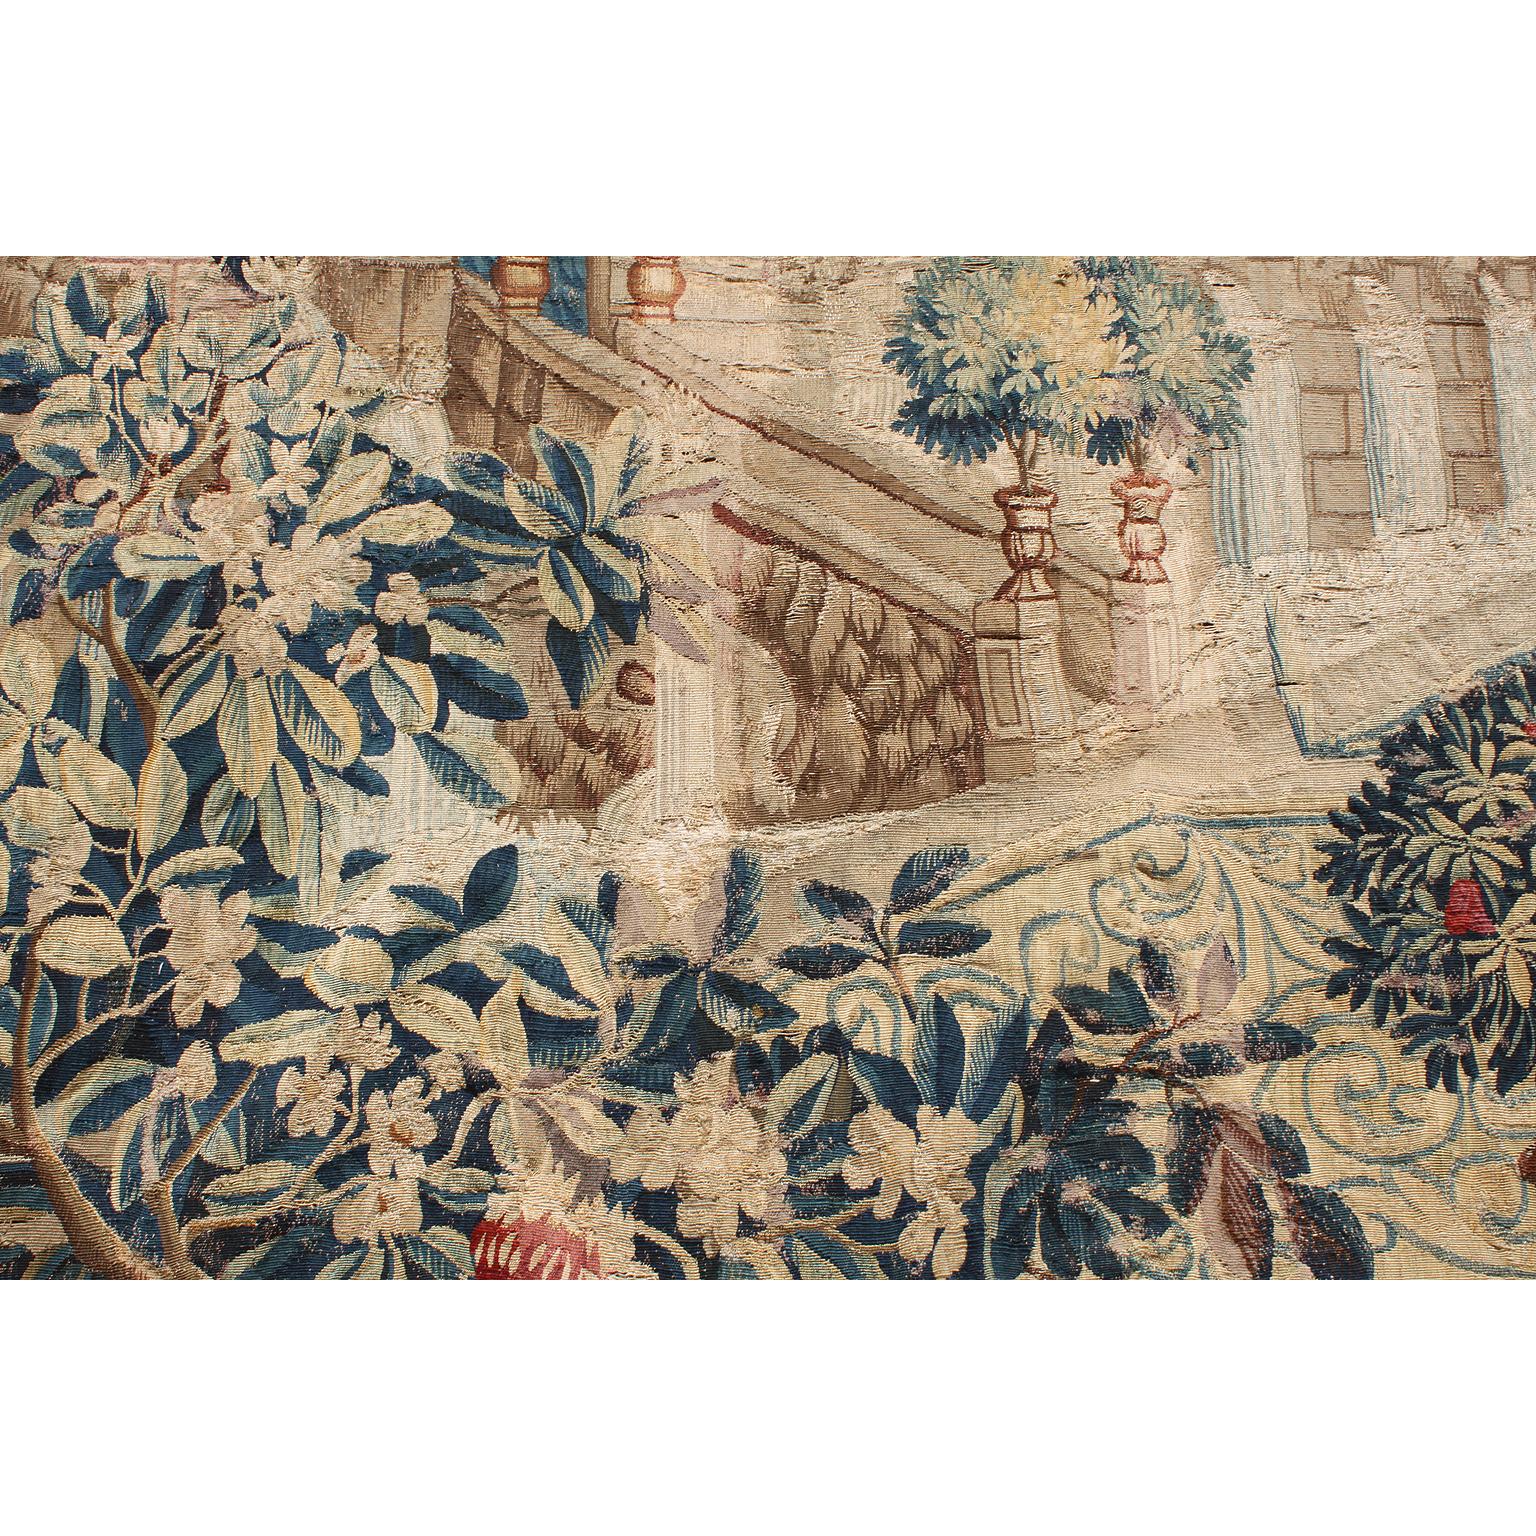 Großer flämischer Bildteppich aus dem 17. bis 18. Jahrhundert mit dem Titel 